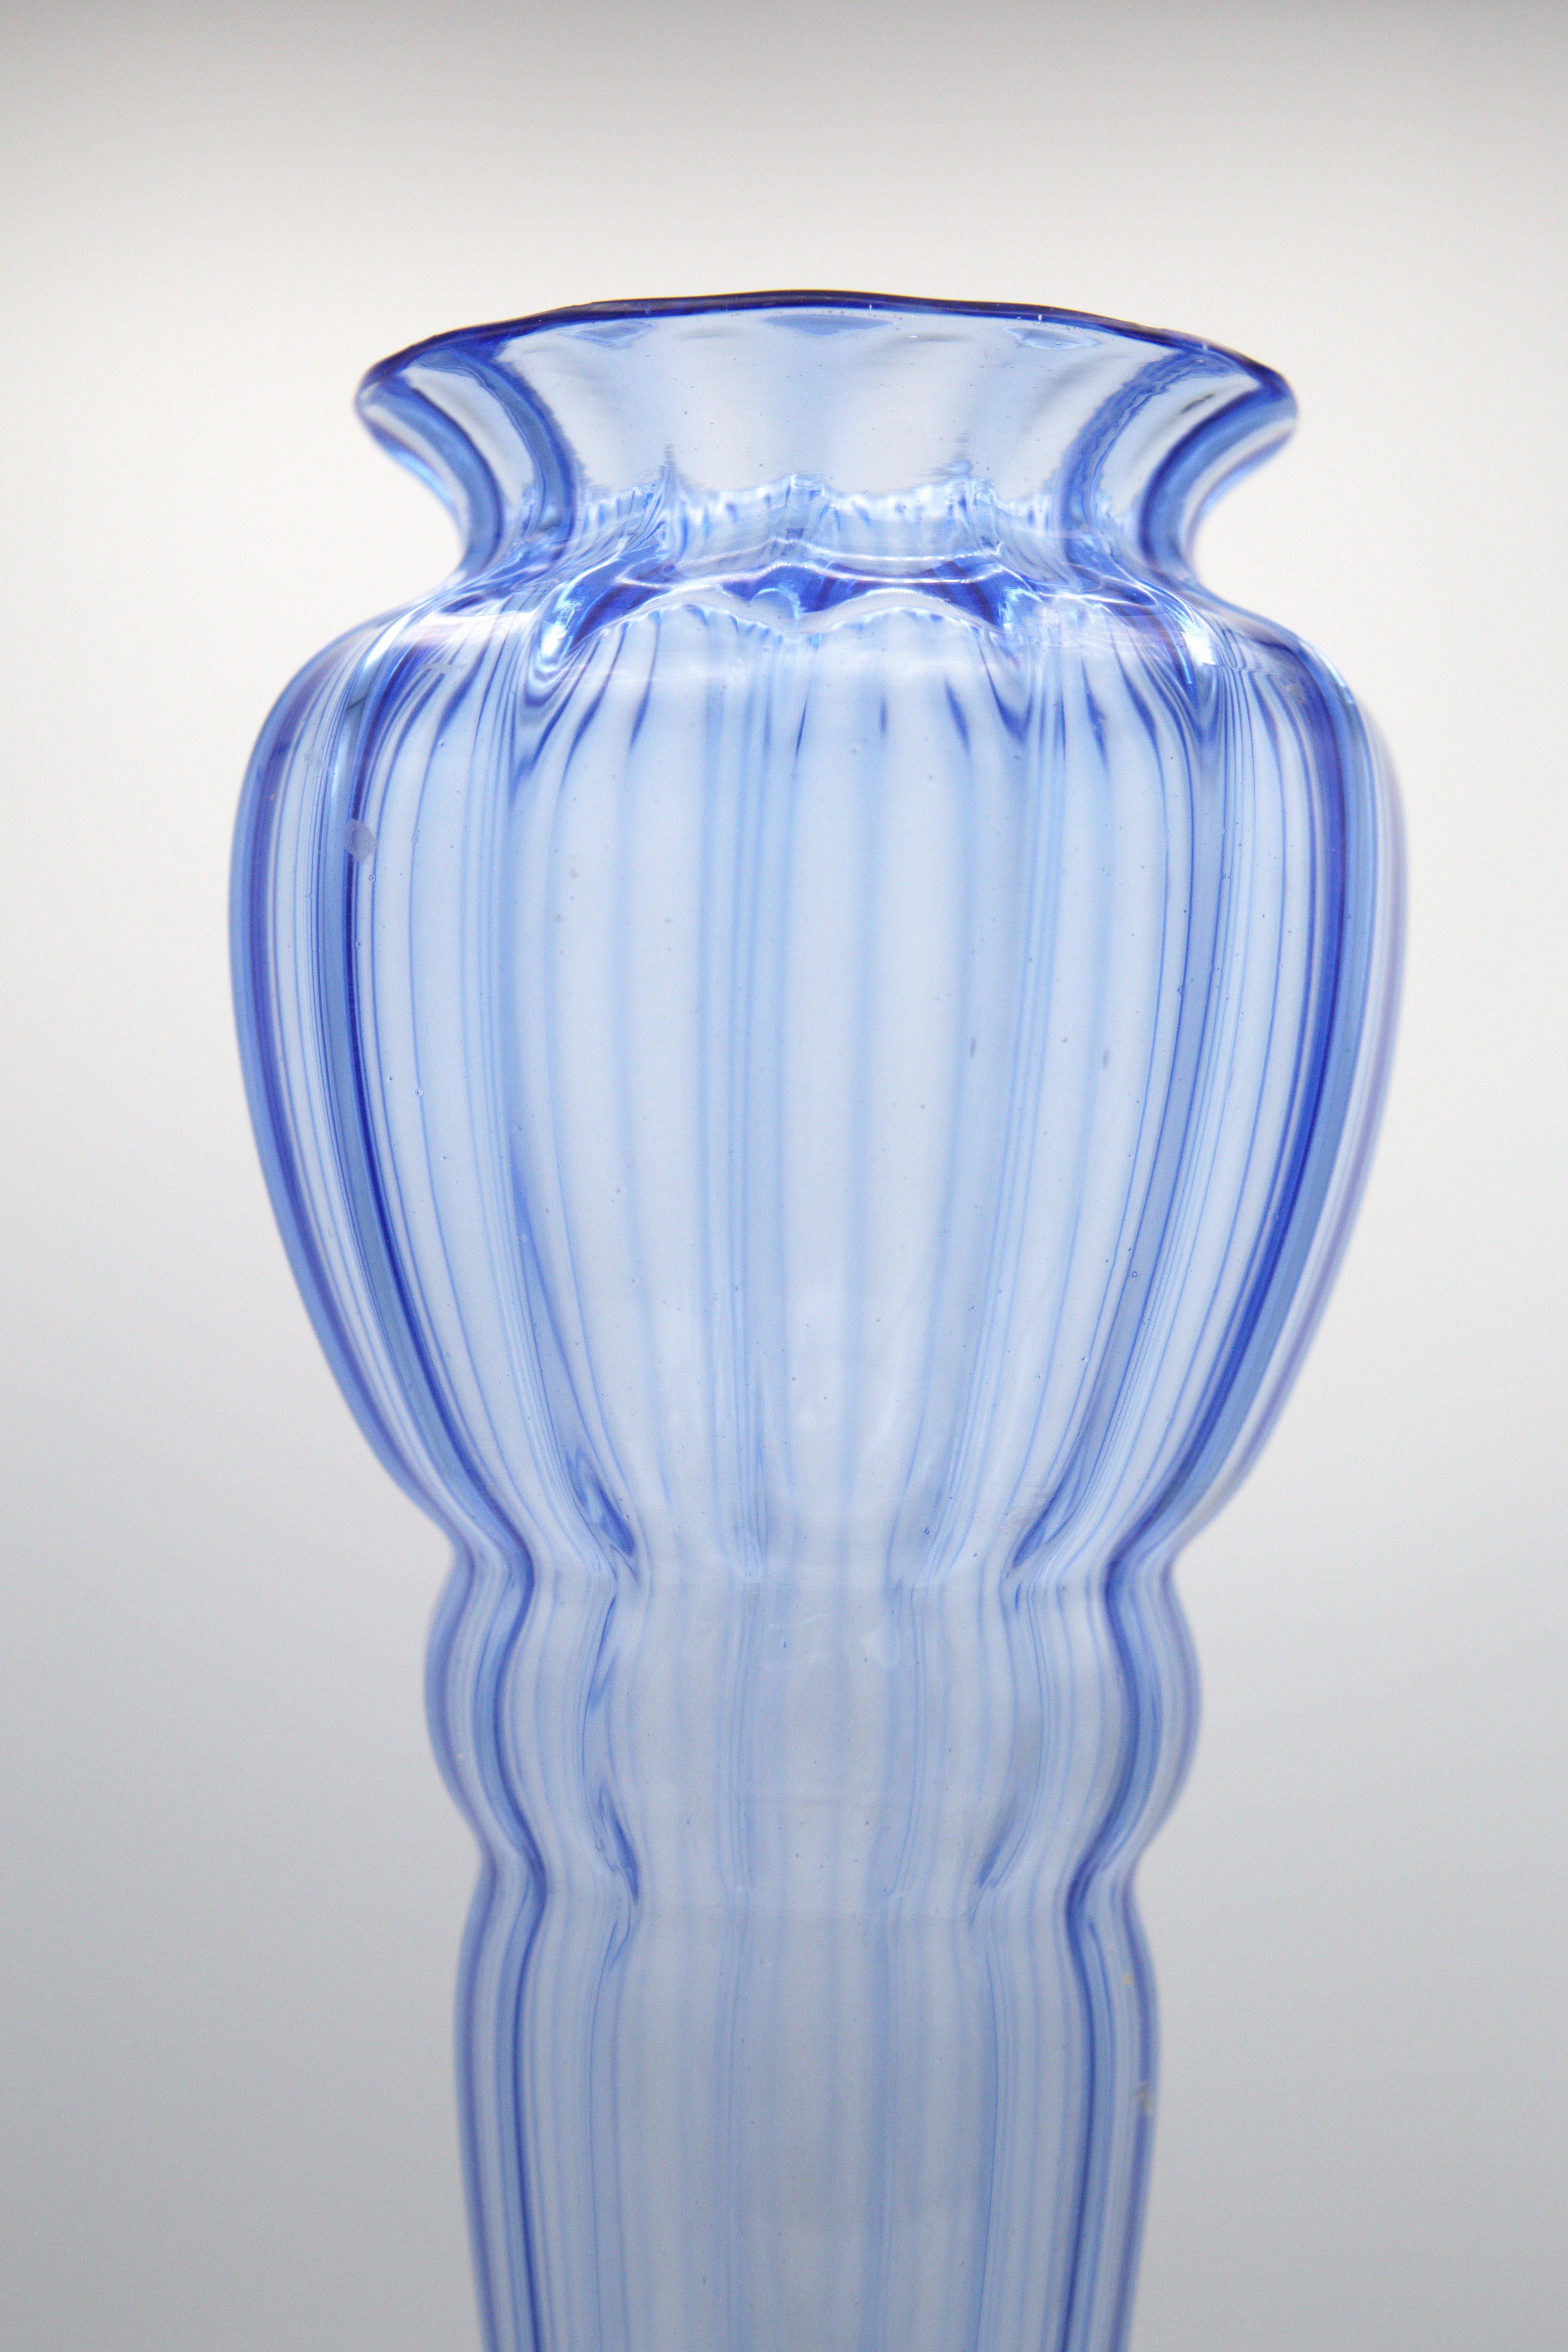 Wunderschöne Glasvase, entworfen von Napoleone Martinuzzi für Vittorio Zecchin in den 30er Jahren, feine italienische Herstellung.
Die Vase ist vollständig aus blauem Glas gefertigt, sehr elegant und fein.
Die Vase erhebt sich von einem runden